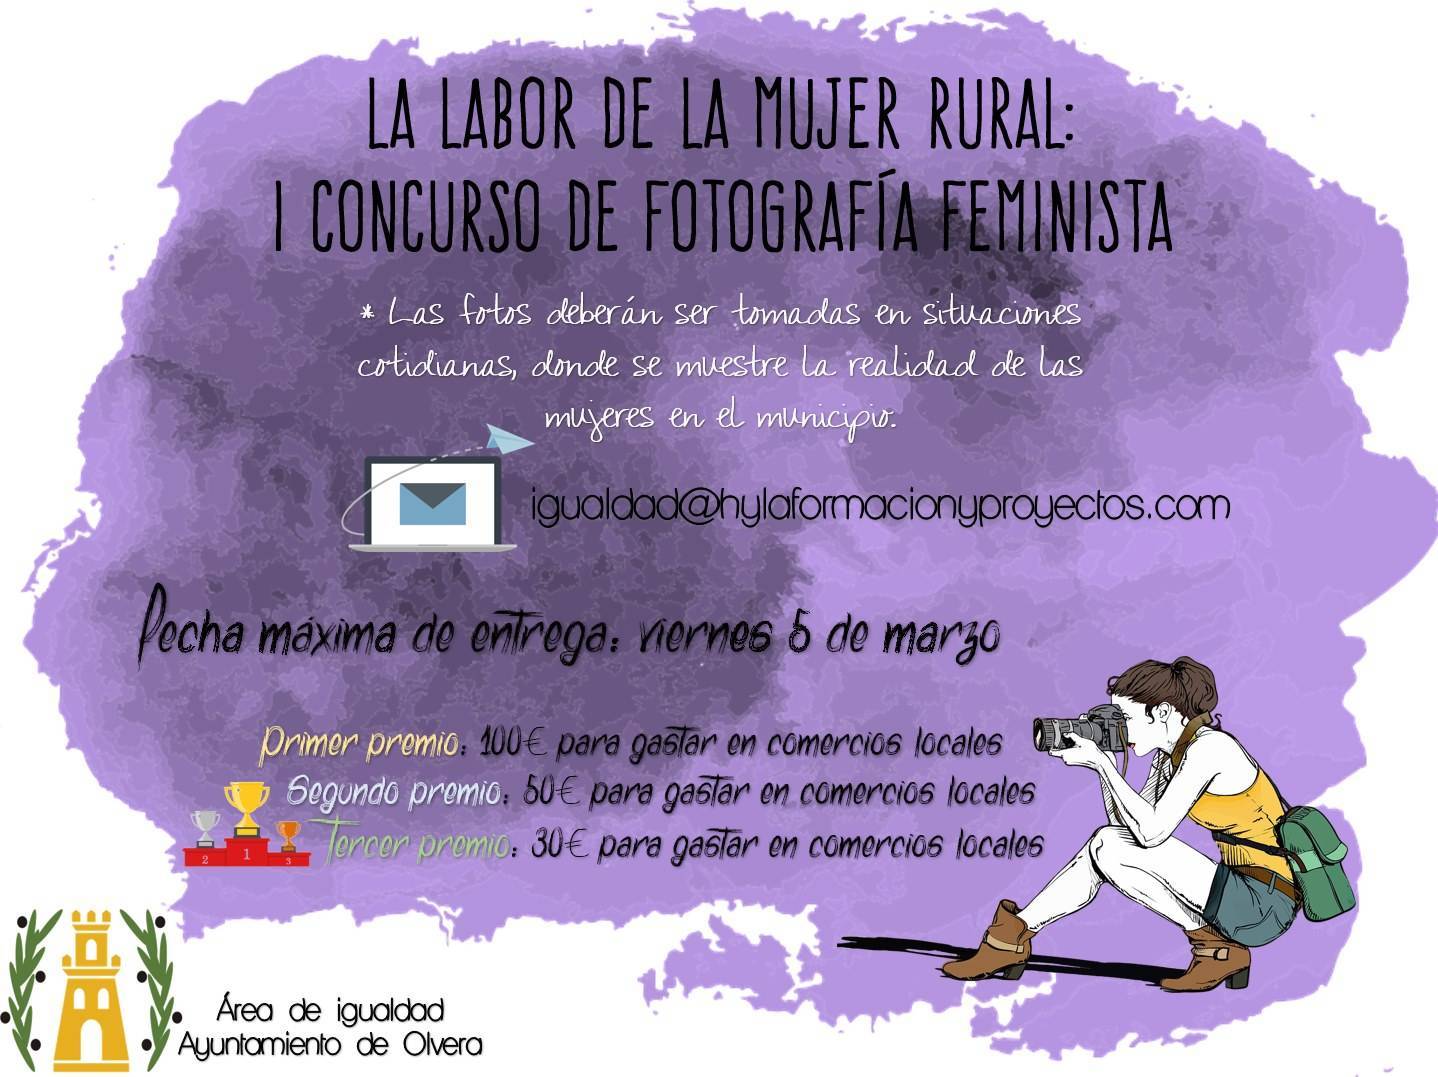 I concurso de fotografía feminista - Olvera (Cádiz) 1